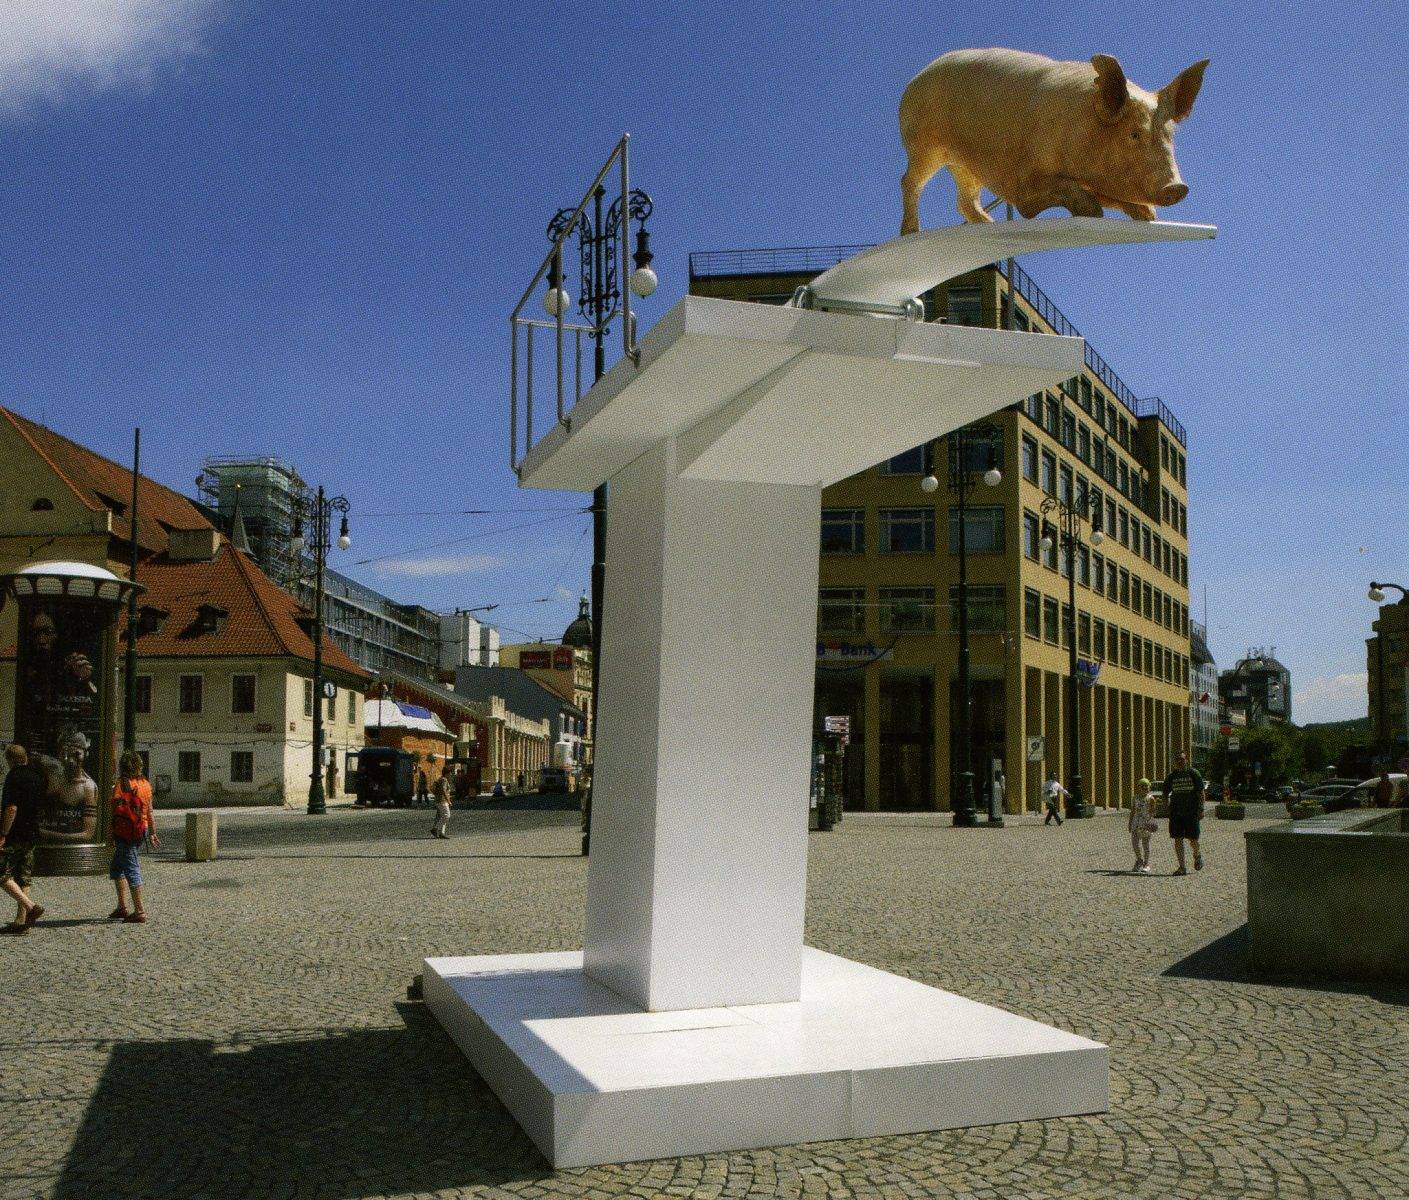 Pig by Jan Kadlec